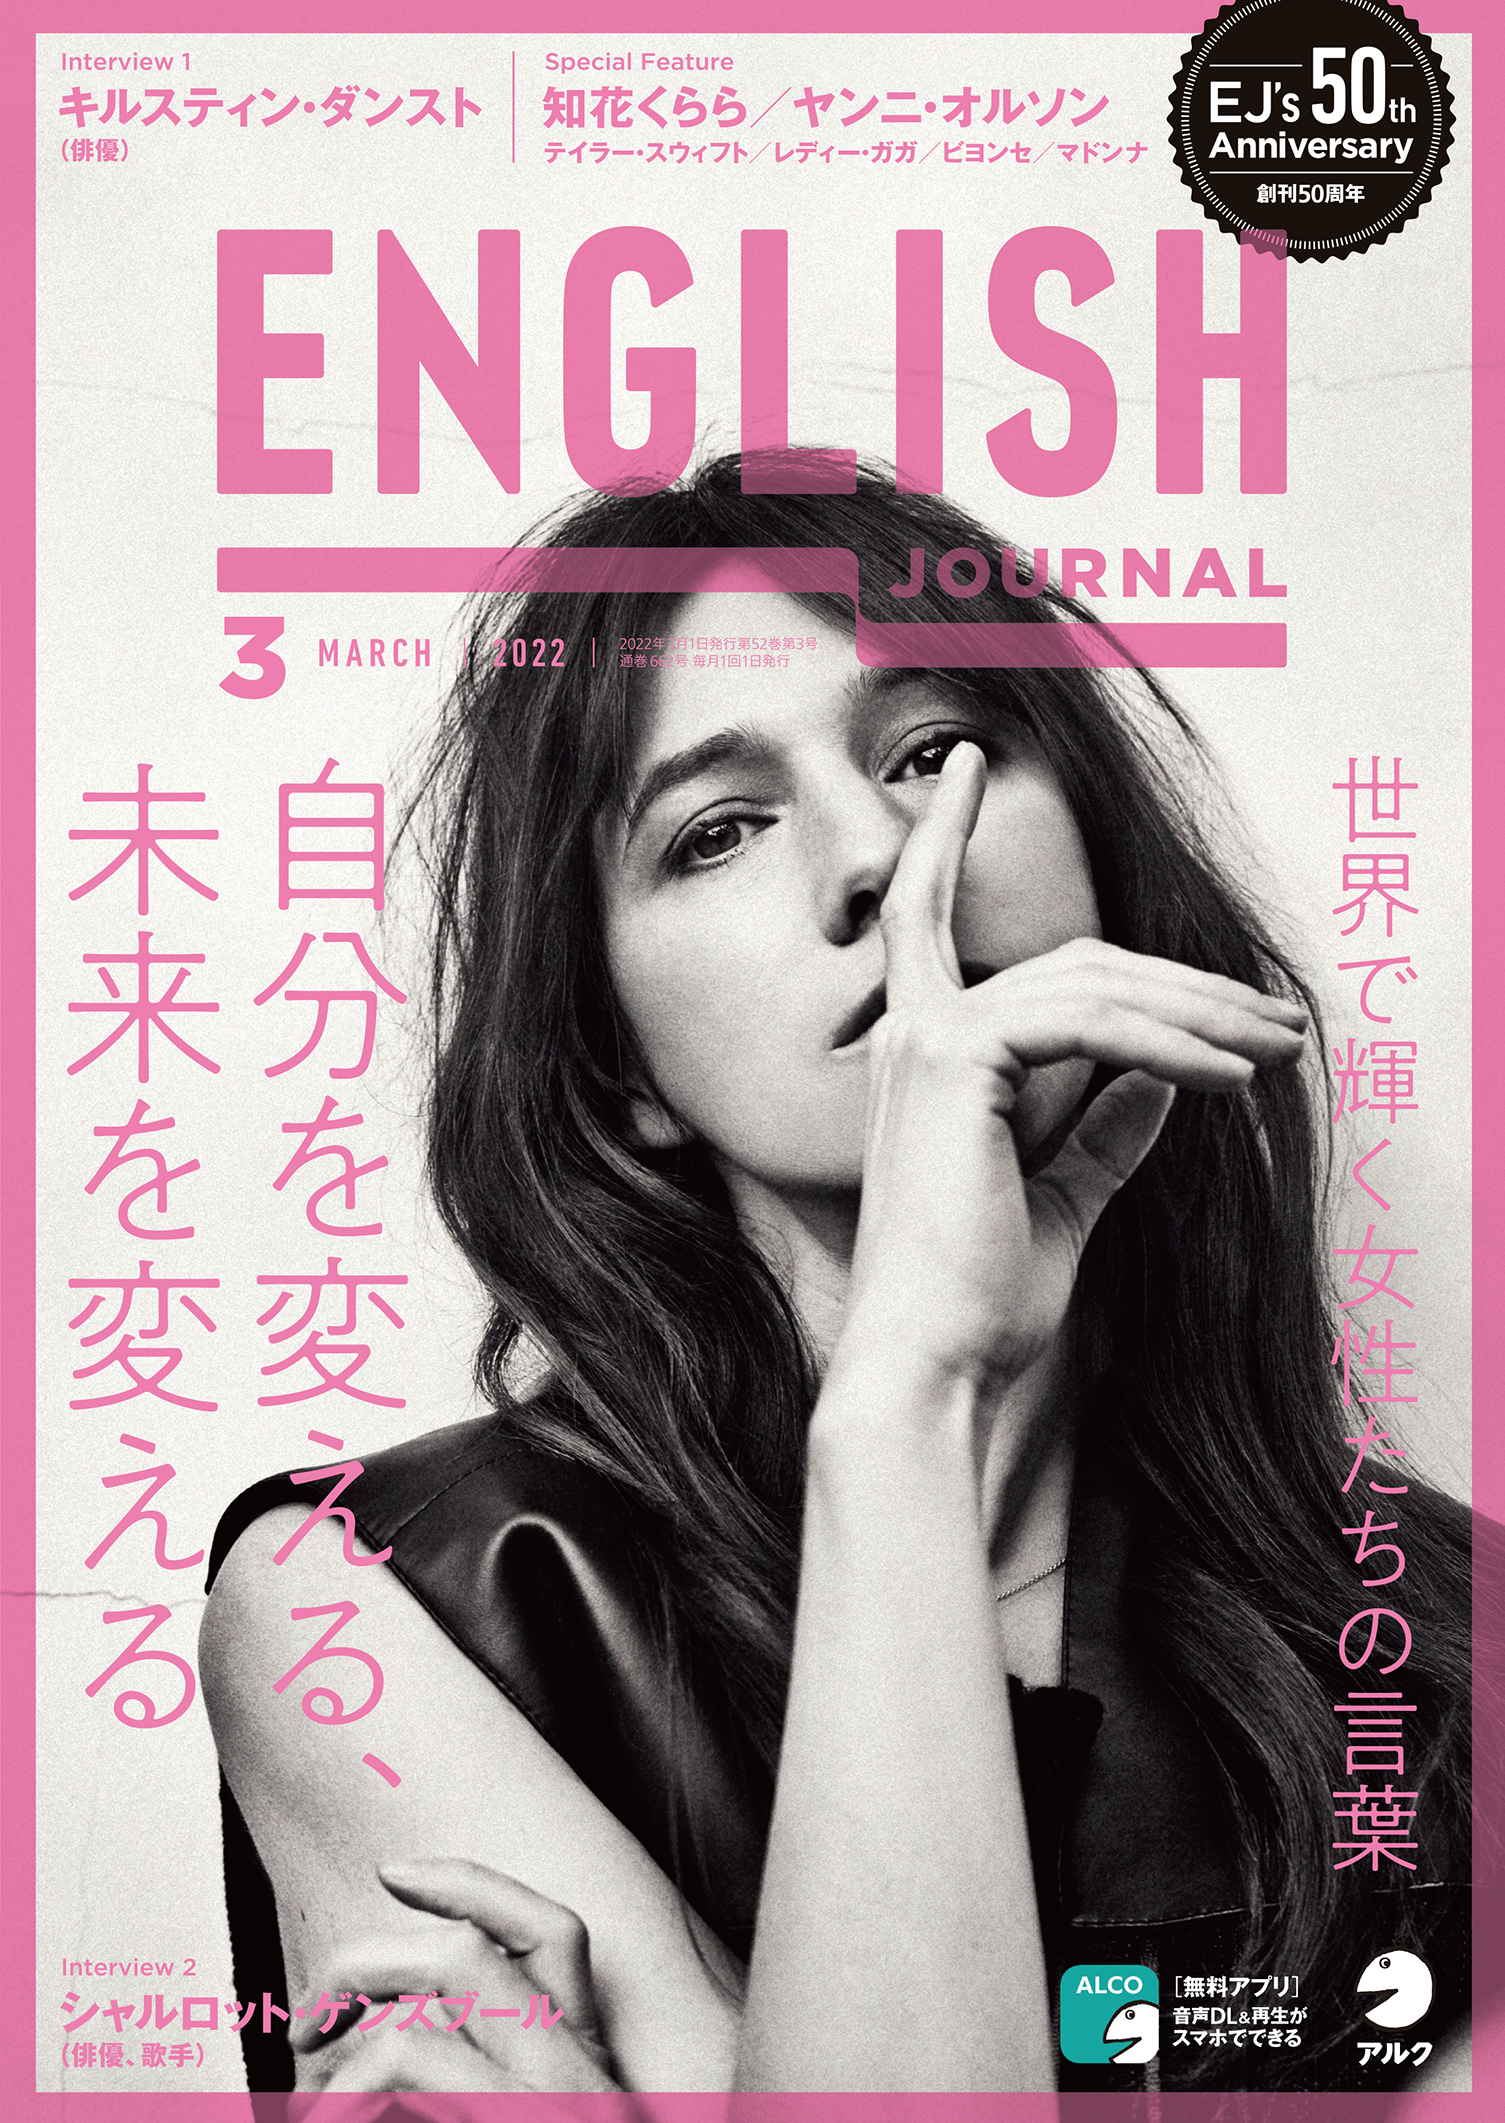 世界で輝く女性たちの言葉 English Journal 22年3月号 2月4日発売 株式会社アルクのプレスリリース